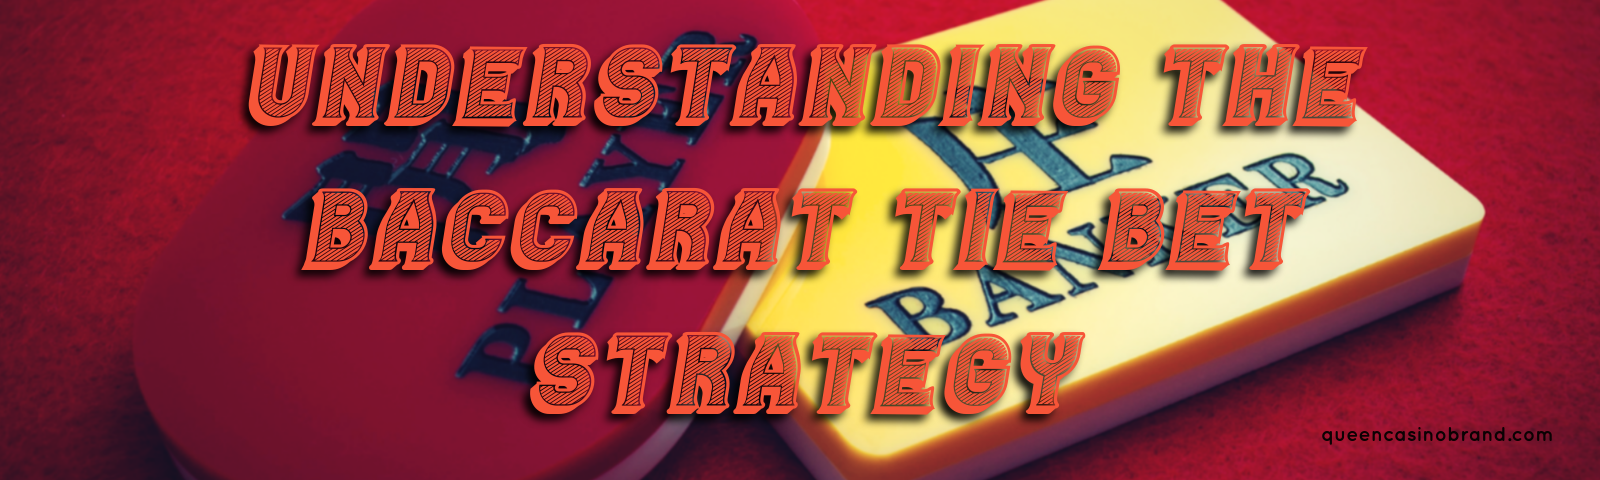 Understanding the Baccarat Tie Bet Strategy - Queen Casino Brand